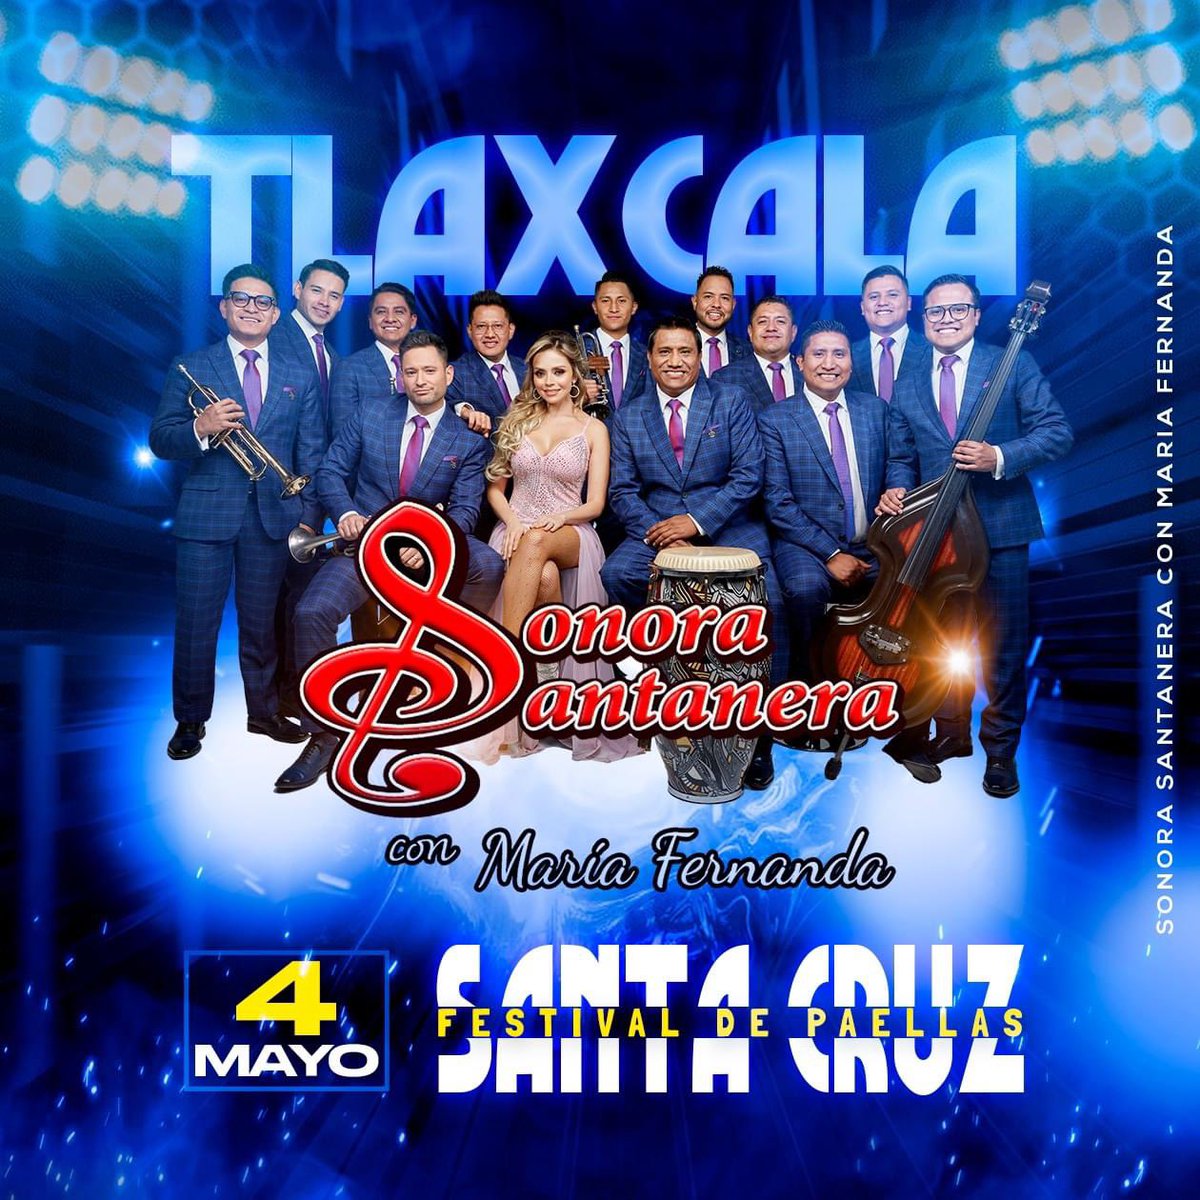 La @s_santanera con @Mariferg6 se presentará este sábado 4 de mayo en Tlaxcala.

#ShowMedia #SonoraSantanera #mariferalvo #Tlaxcala #SantaCruz